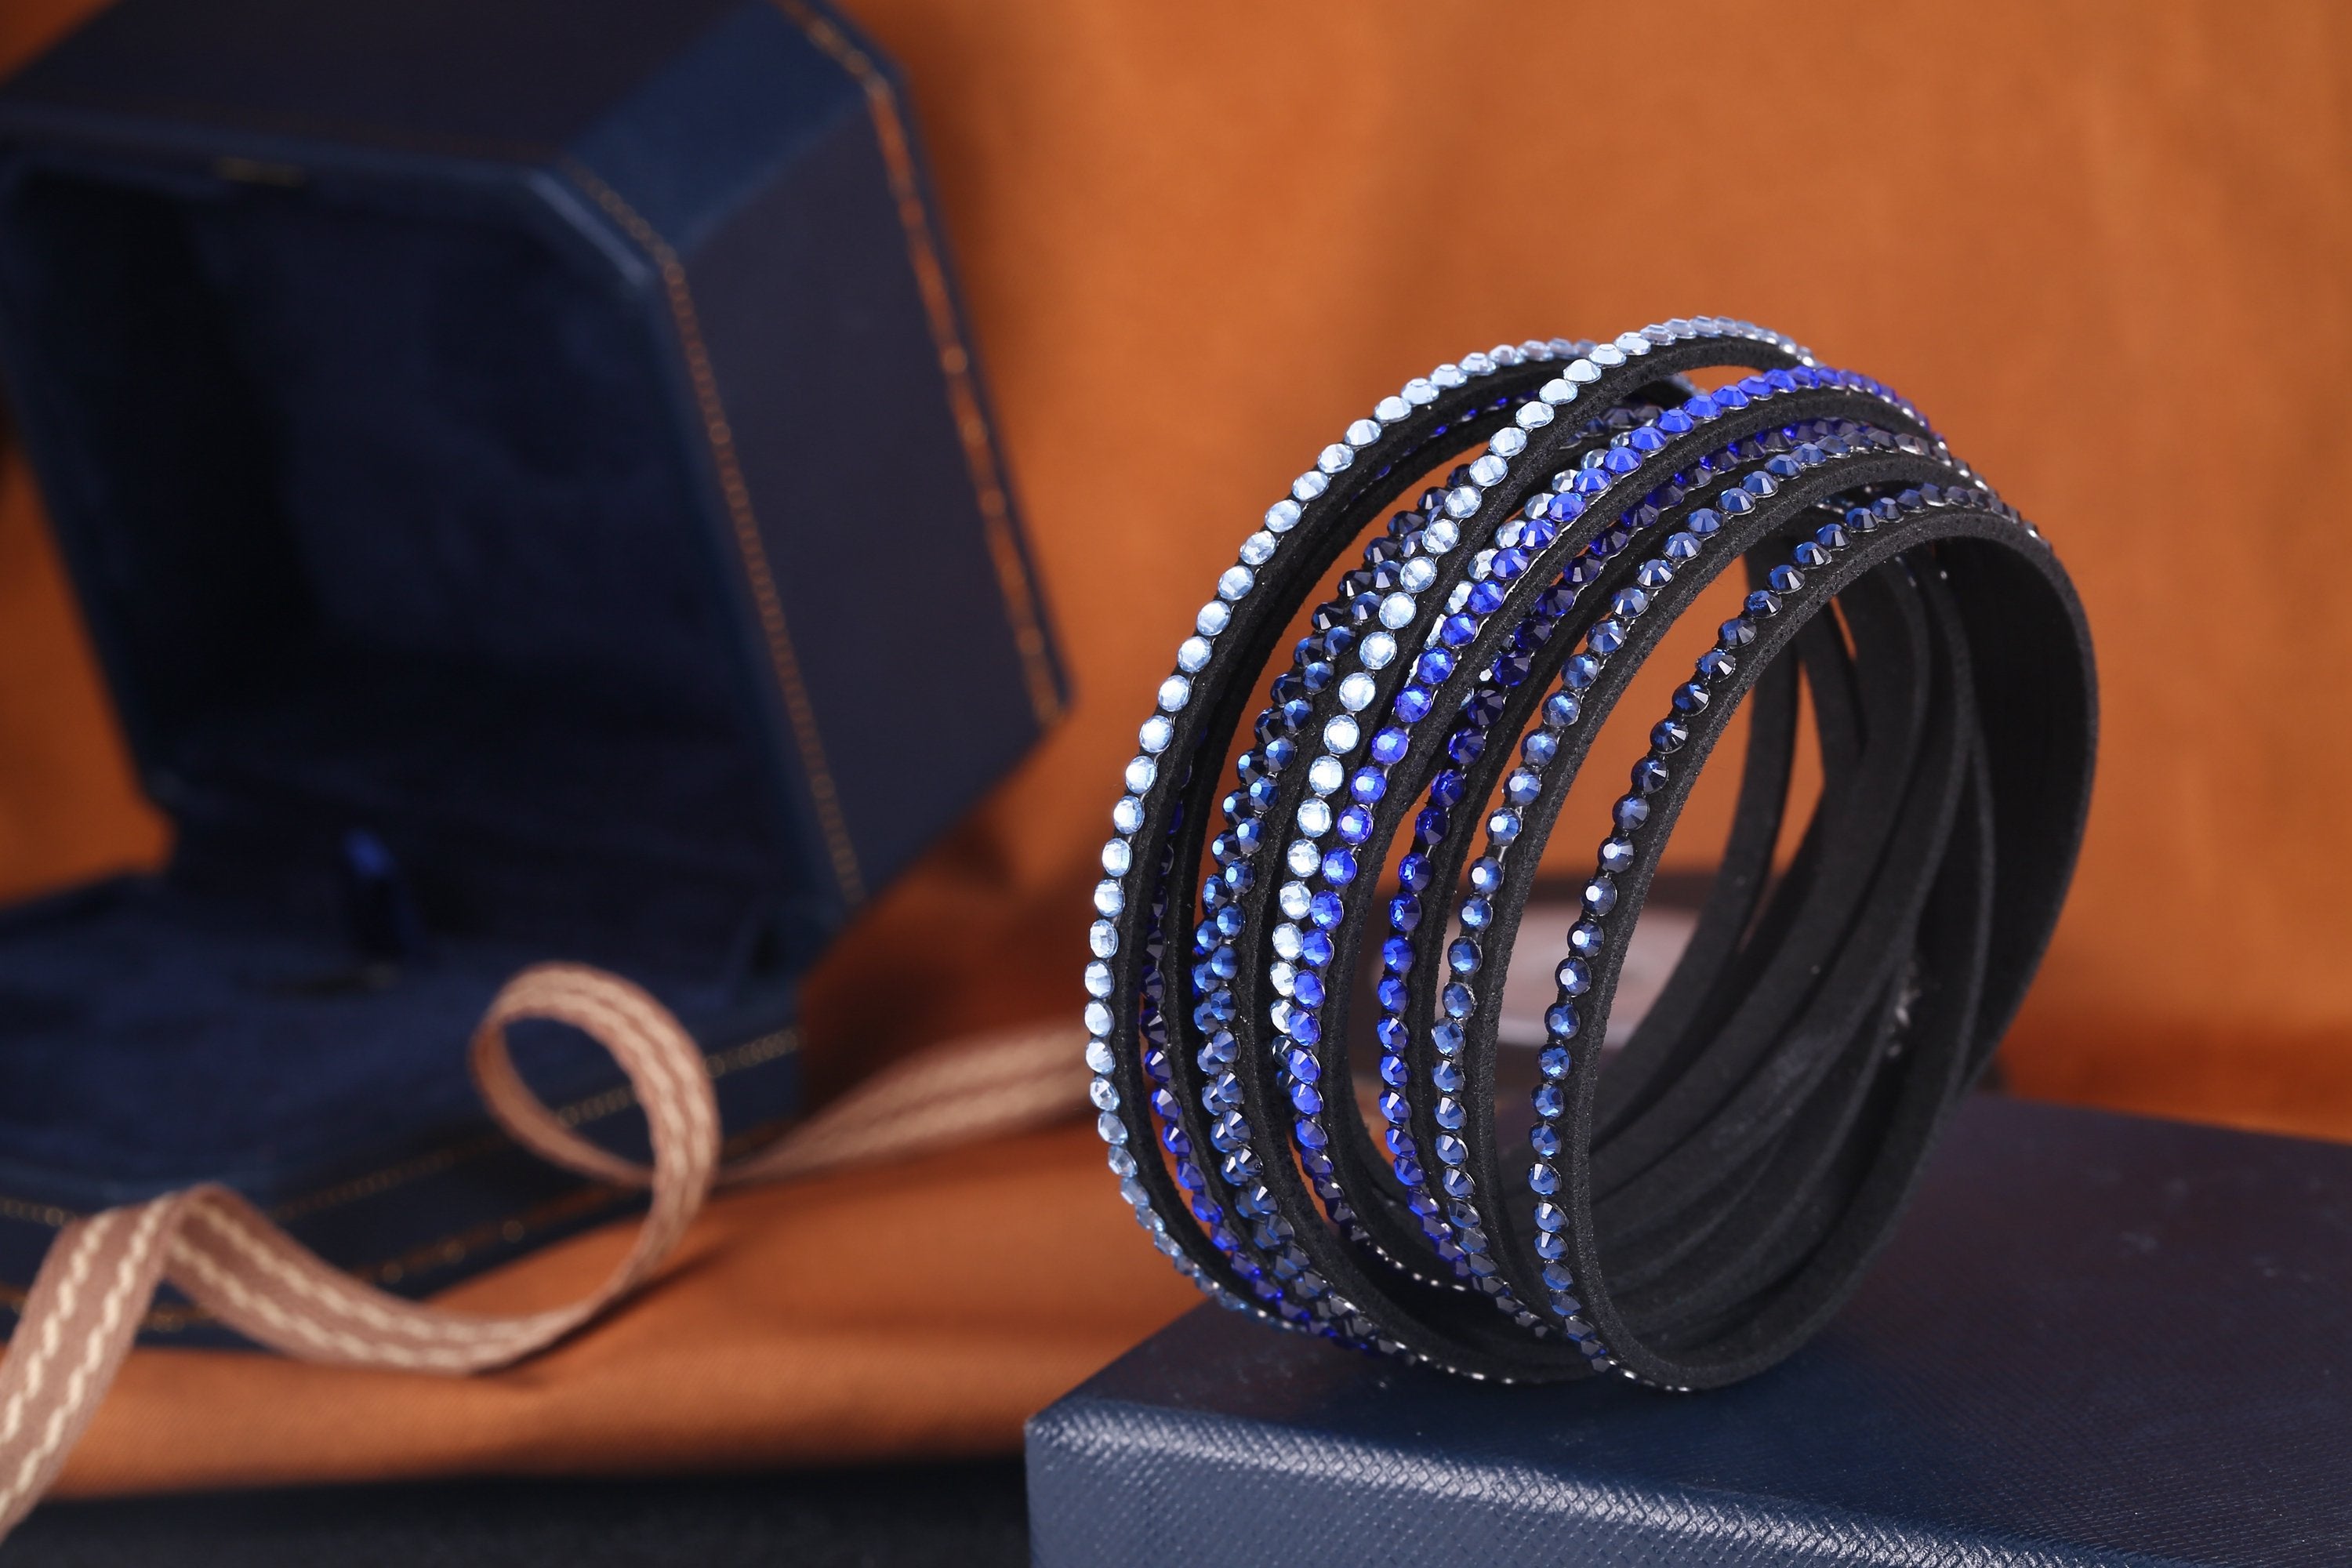 Austrian Crystalized Leather Wrap Bracelet